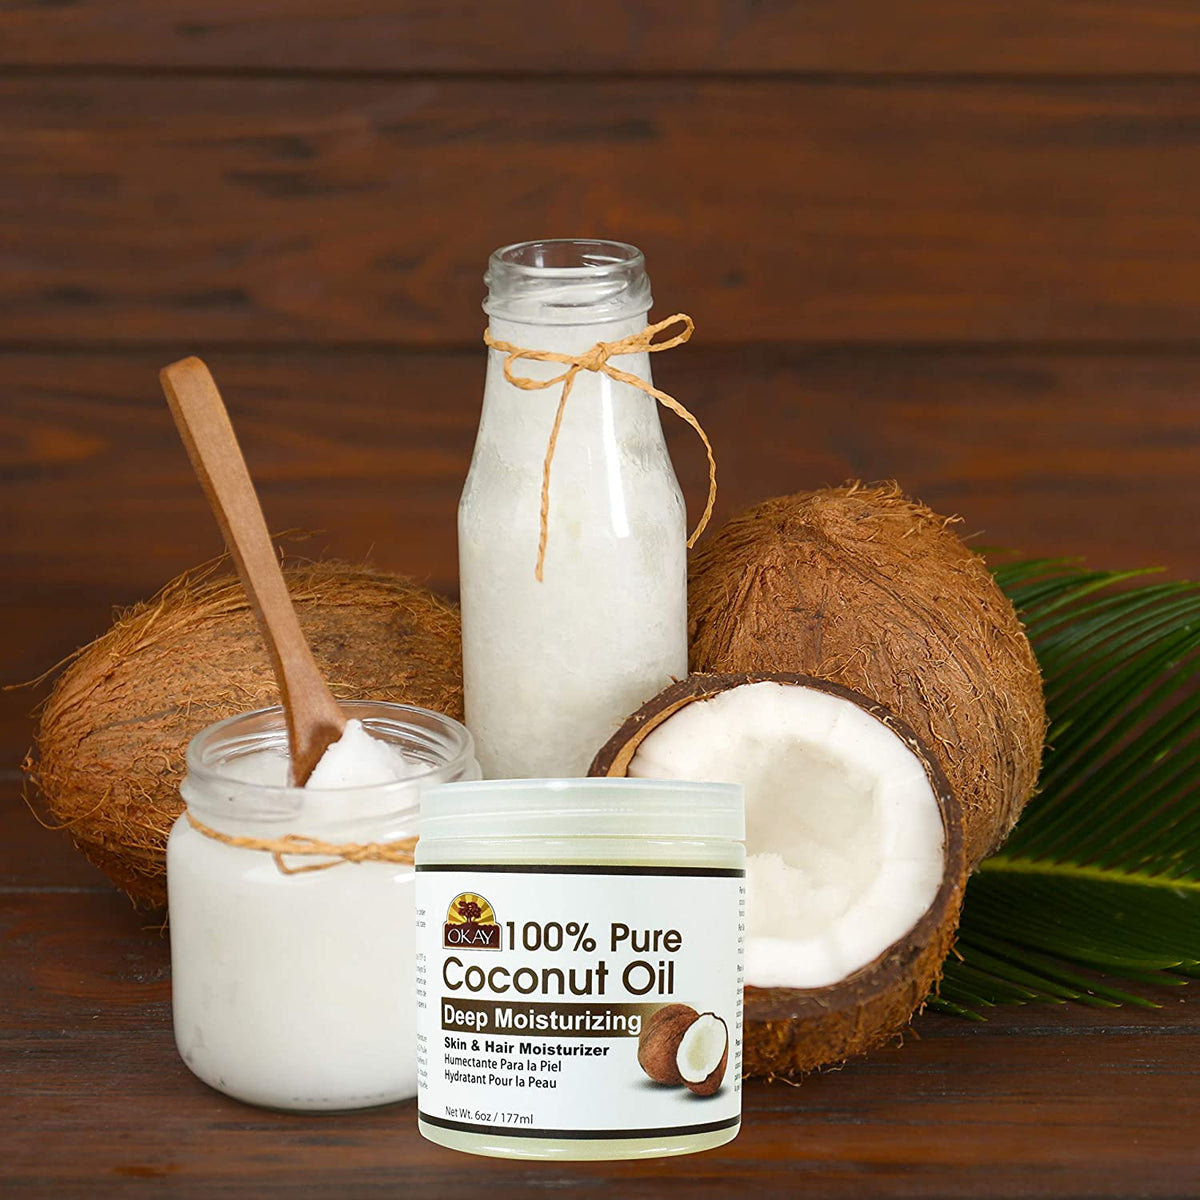 Okay 100% Pure Coconut Oil, Deep Moisturizing - 6 oz jar